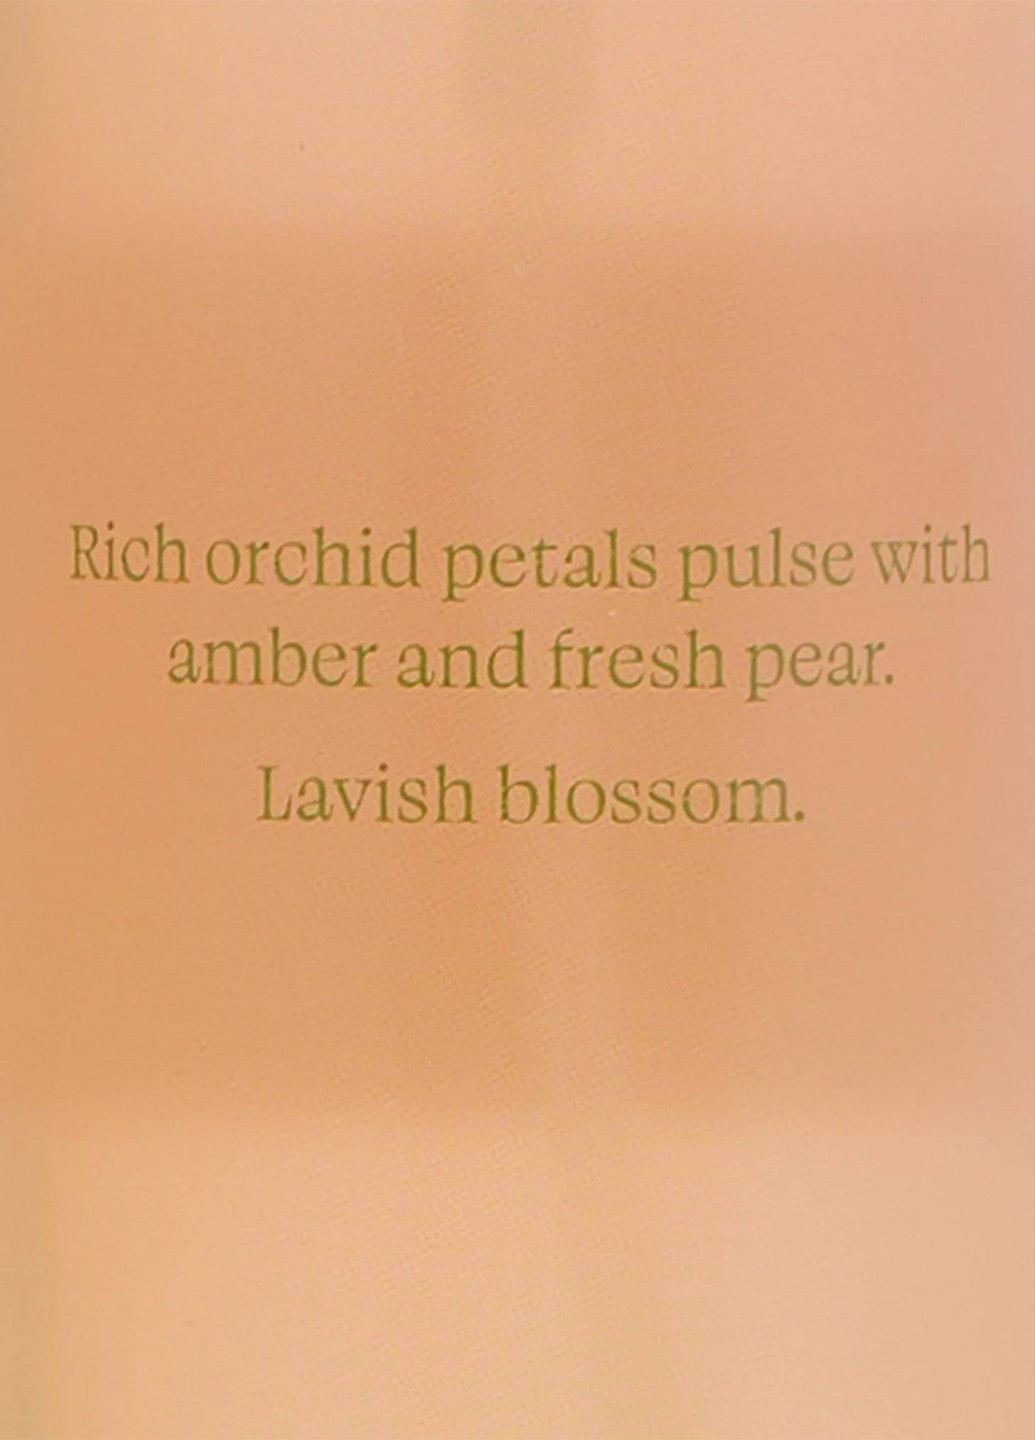 Набор Lush Orchid Amber (лосьон, мист), 236 мл/250 мл Victoria's Secret (289787233)